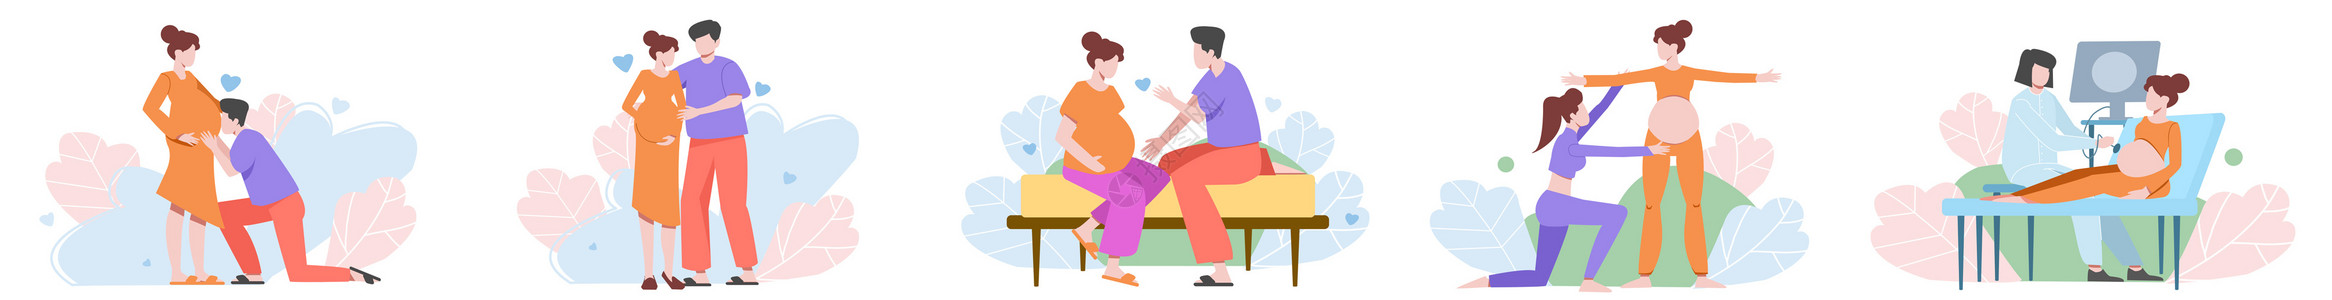 孕妇腹痛产前护理孕妇伴侣呵护训练场景插画元素插画